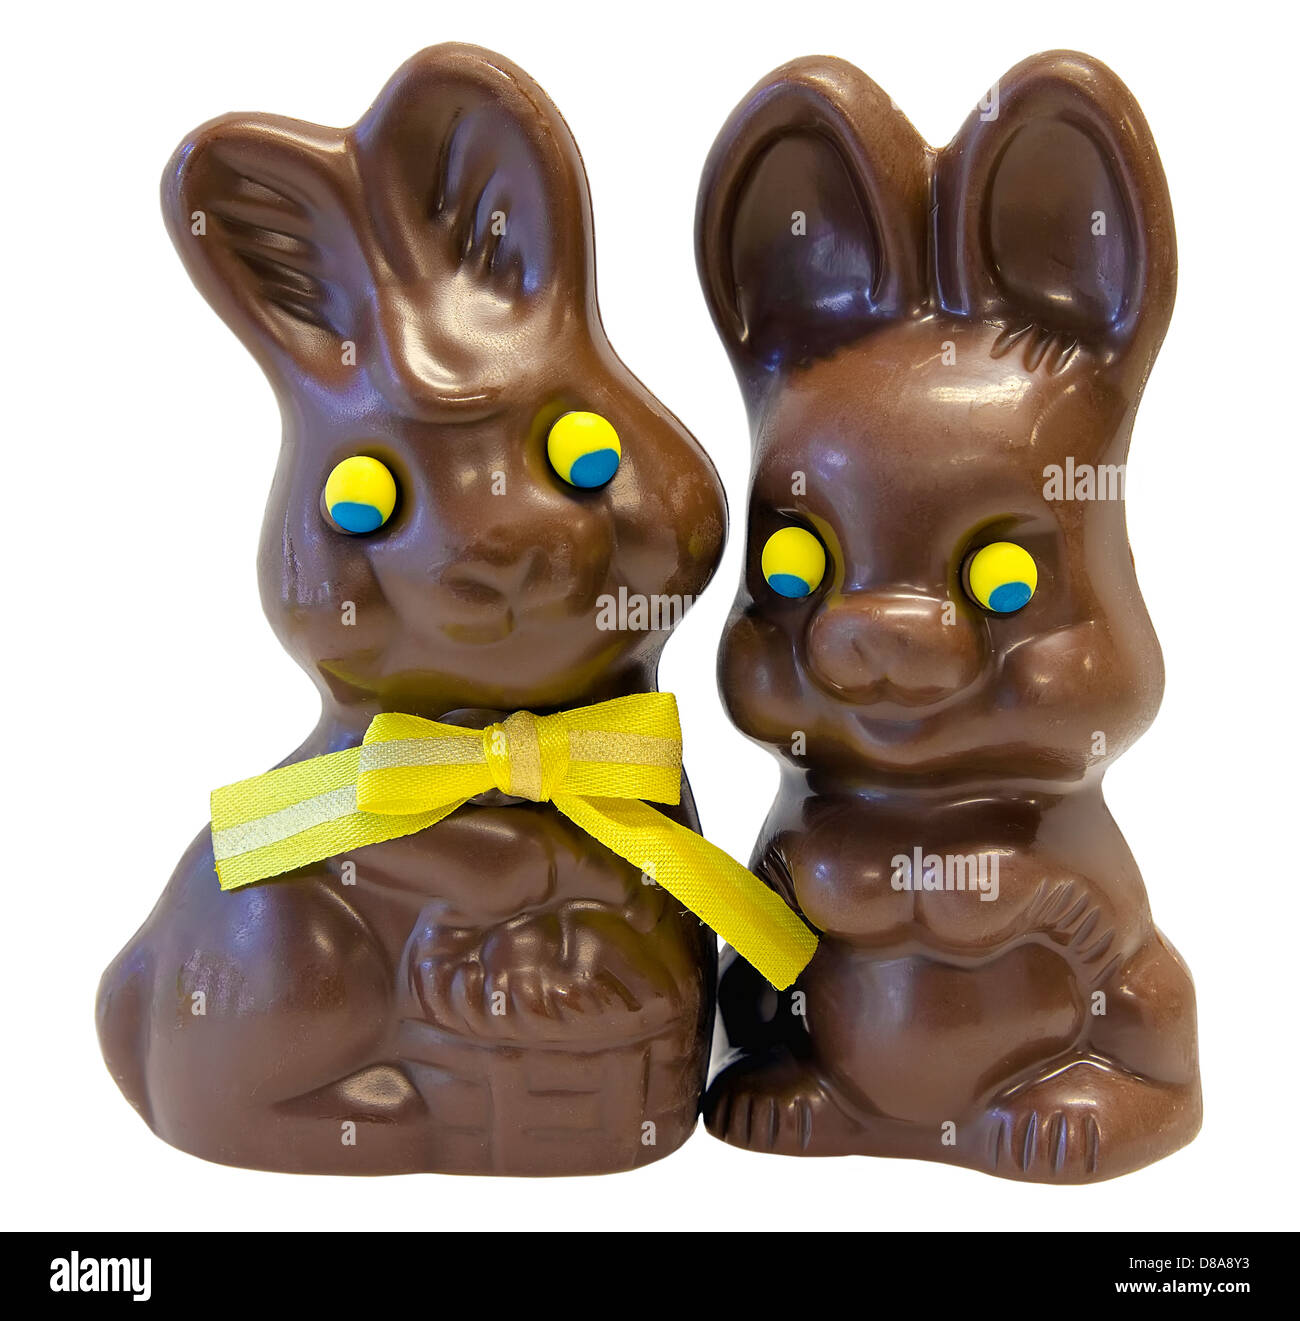 Felice di cioccolato il giorno di Pasqua coniglietto coppia di coniglio con nastro giallo Bow isolati su sfondo bianco Foto Stock